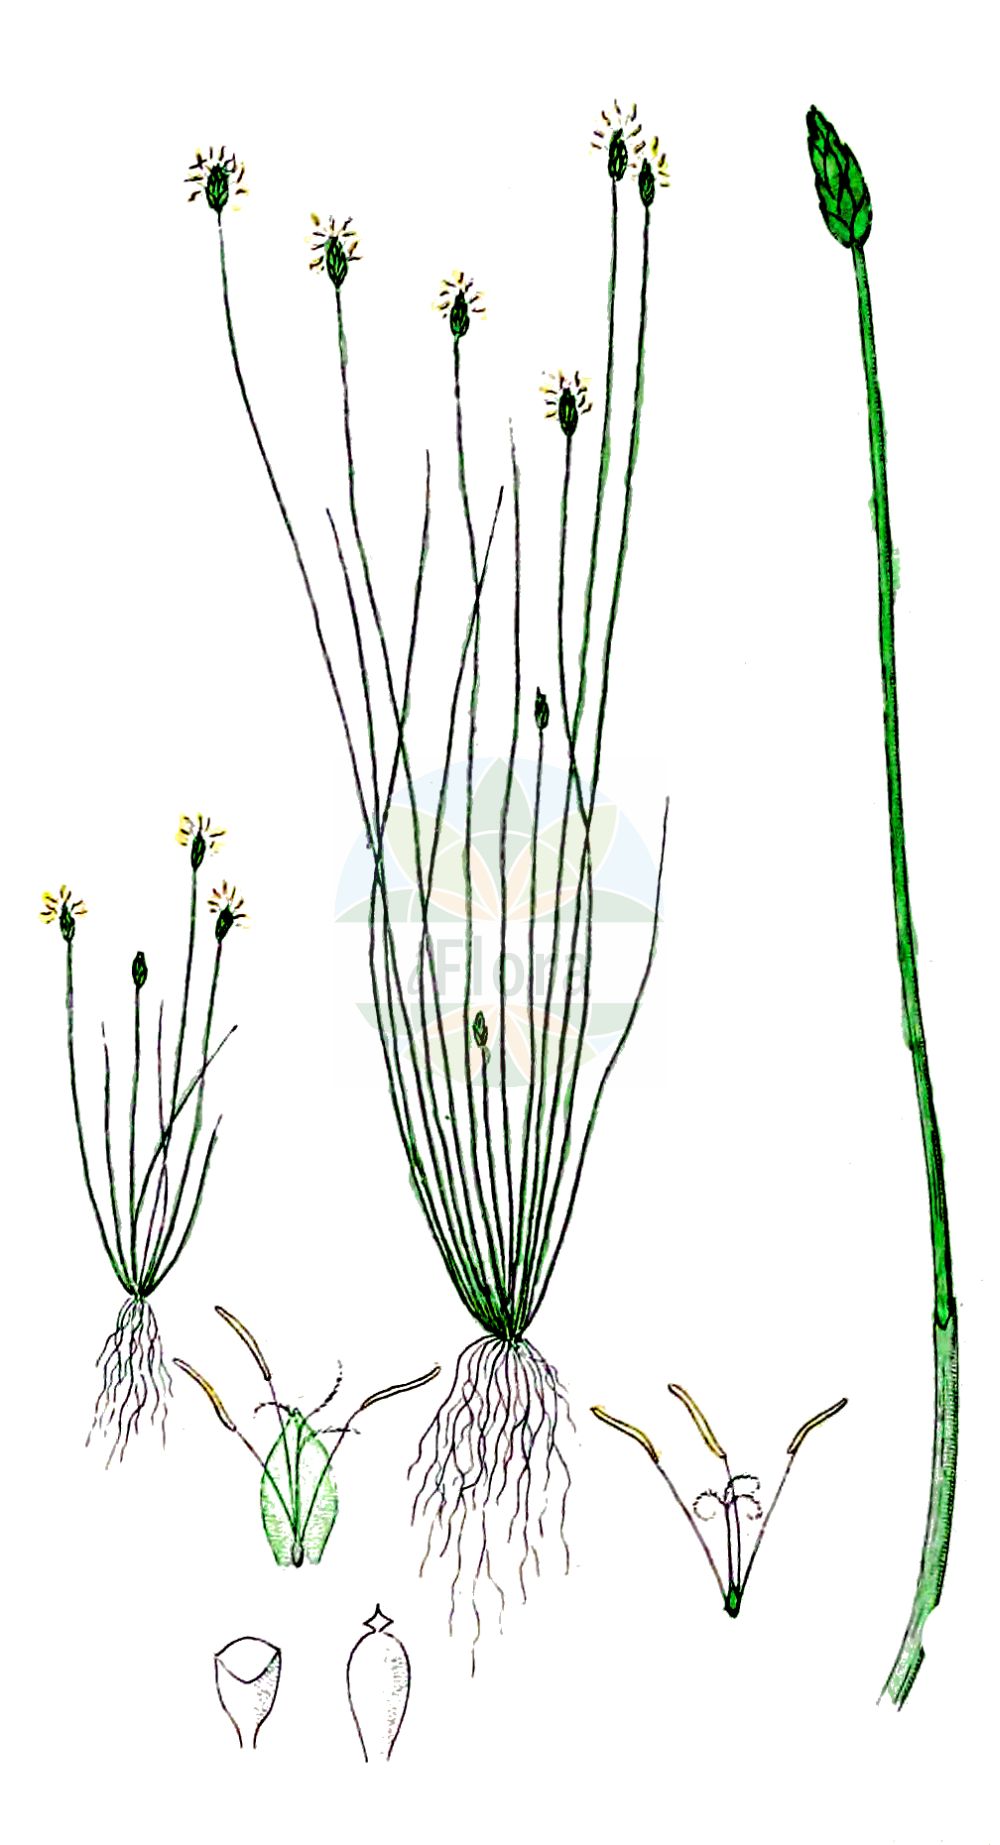 Historische Abbildung von Eleocharis acicularis (Nadel-Sumpfbinse - Needle Spike-rush). Das Bild zeigt Blatt, Bluete, Frucht und Same. ---- Historical Drawing of Eleocharis acicularis (Nadel-Sumpfbinse - Needle Spike-rush). The image is showing leaf, flower, fruit and seed.(Eleocharis acicularis,Nadel-Sumpfbinse,Needle Spike-rush,Eleocharis acicularis,Scirpus acicularis,Nadel-Sumpfbinse,Nadelbinse,Needle Spike-rush,Slender Spikerush,Eleocharis,Sumpfbinse,Spikerush,Cyperaceae,Sauergräser,Sedge family,Blatt,Bluete,Frucht,Same,leaf,flower,fruit,seed,Svensk Botanik (Svensk Botanik))